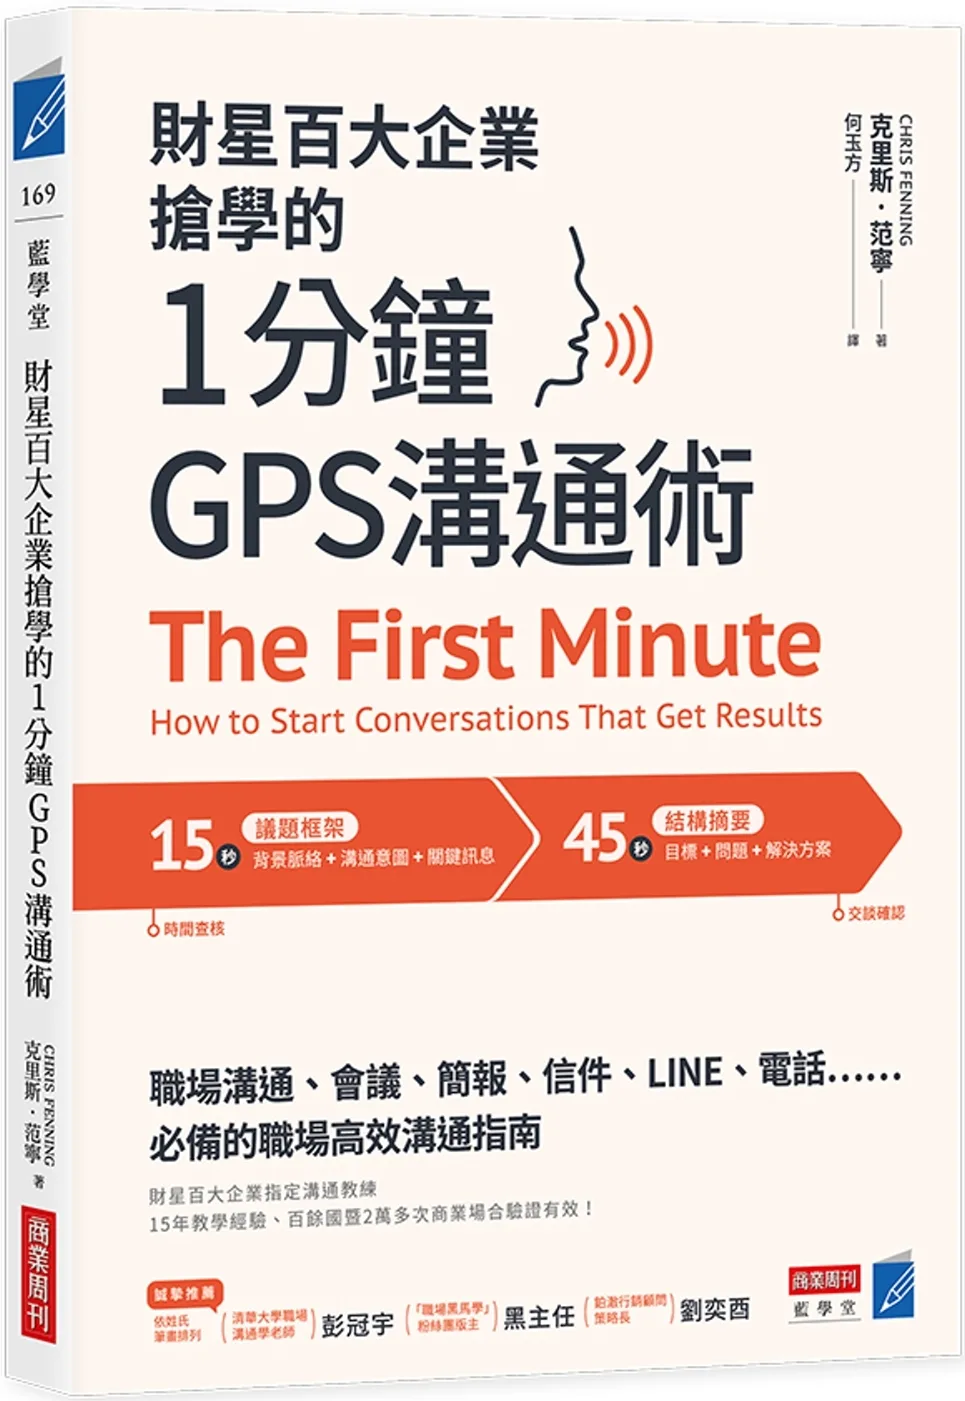 財星百大企業搶學的•1分鐘GPS溝通術：會議、簡報、信件、LINE、電話……必備的職場高效溝通指南